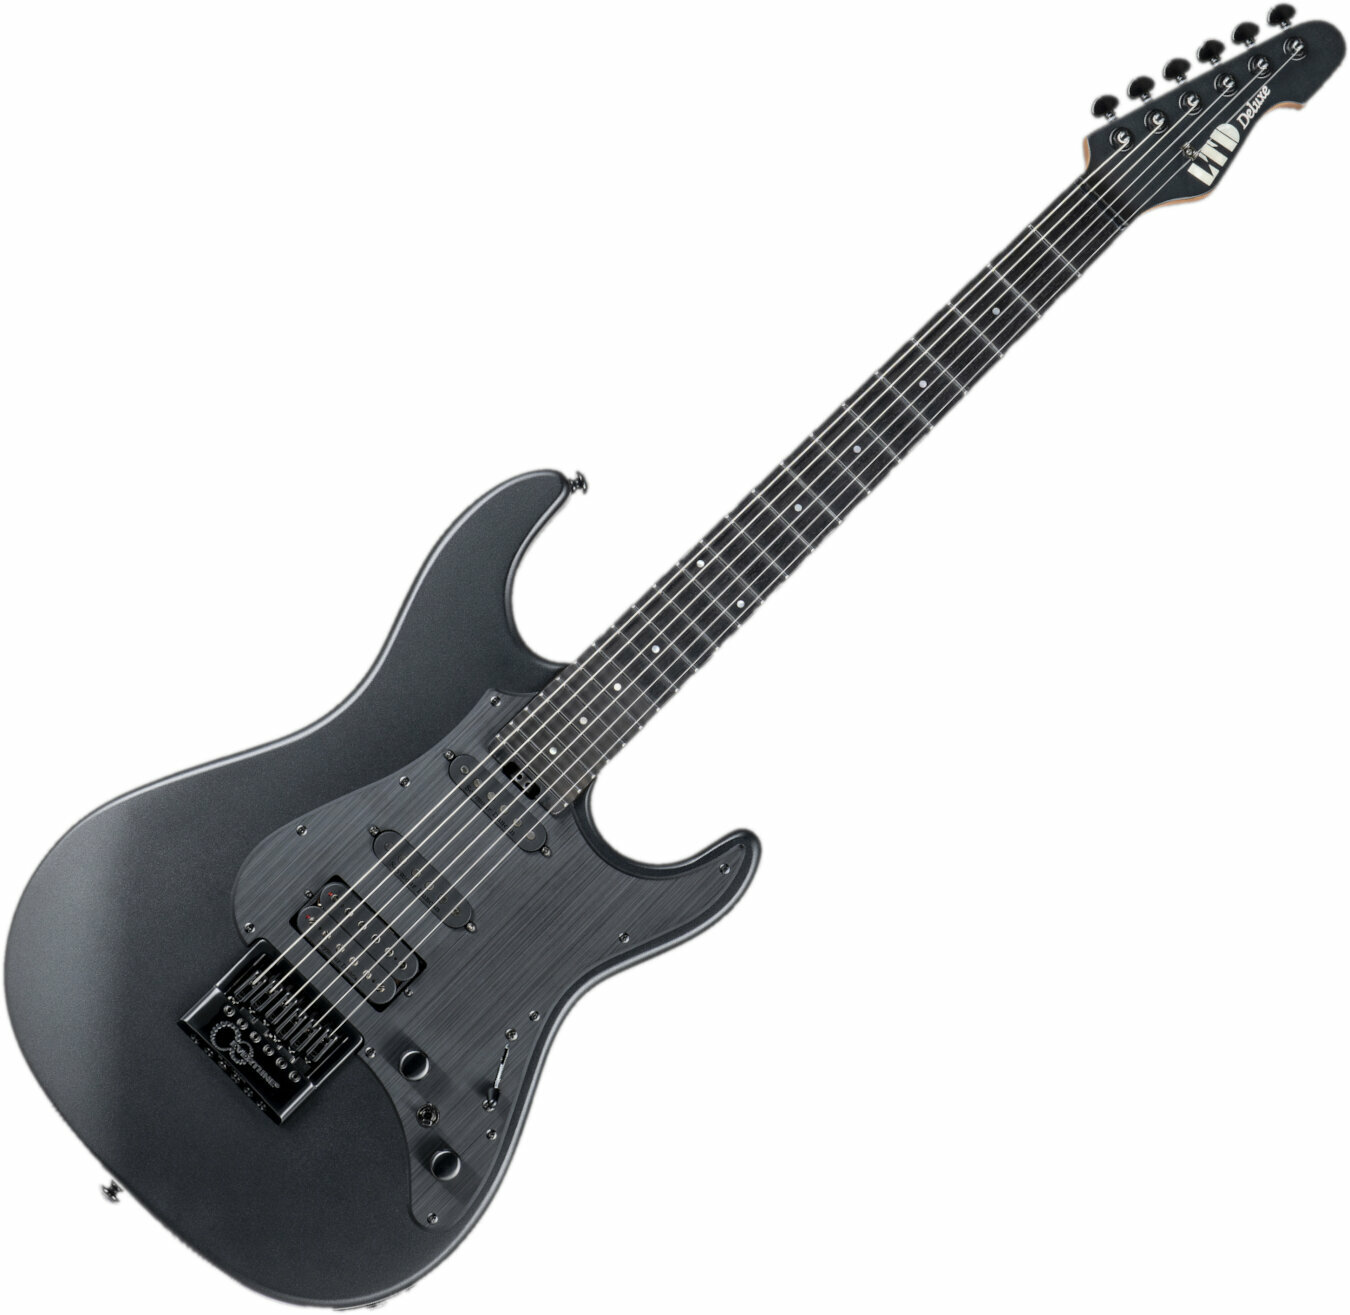 E-Gitarre ESP LTD SN-1000 Evertune Charcoal Metallic Satin (Neuwertig)